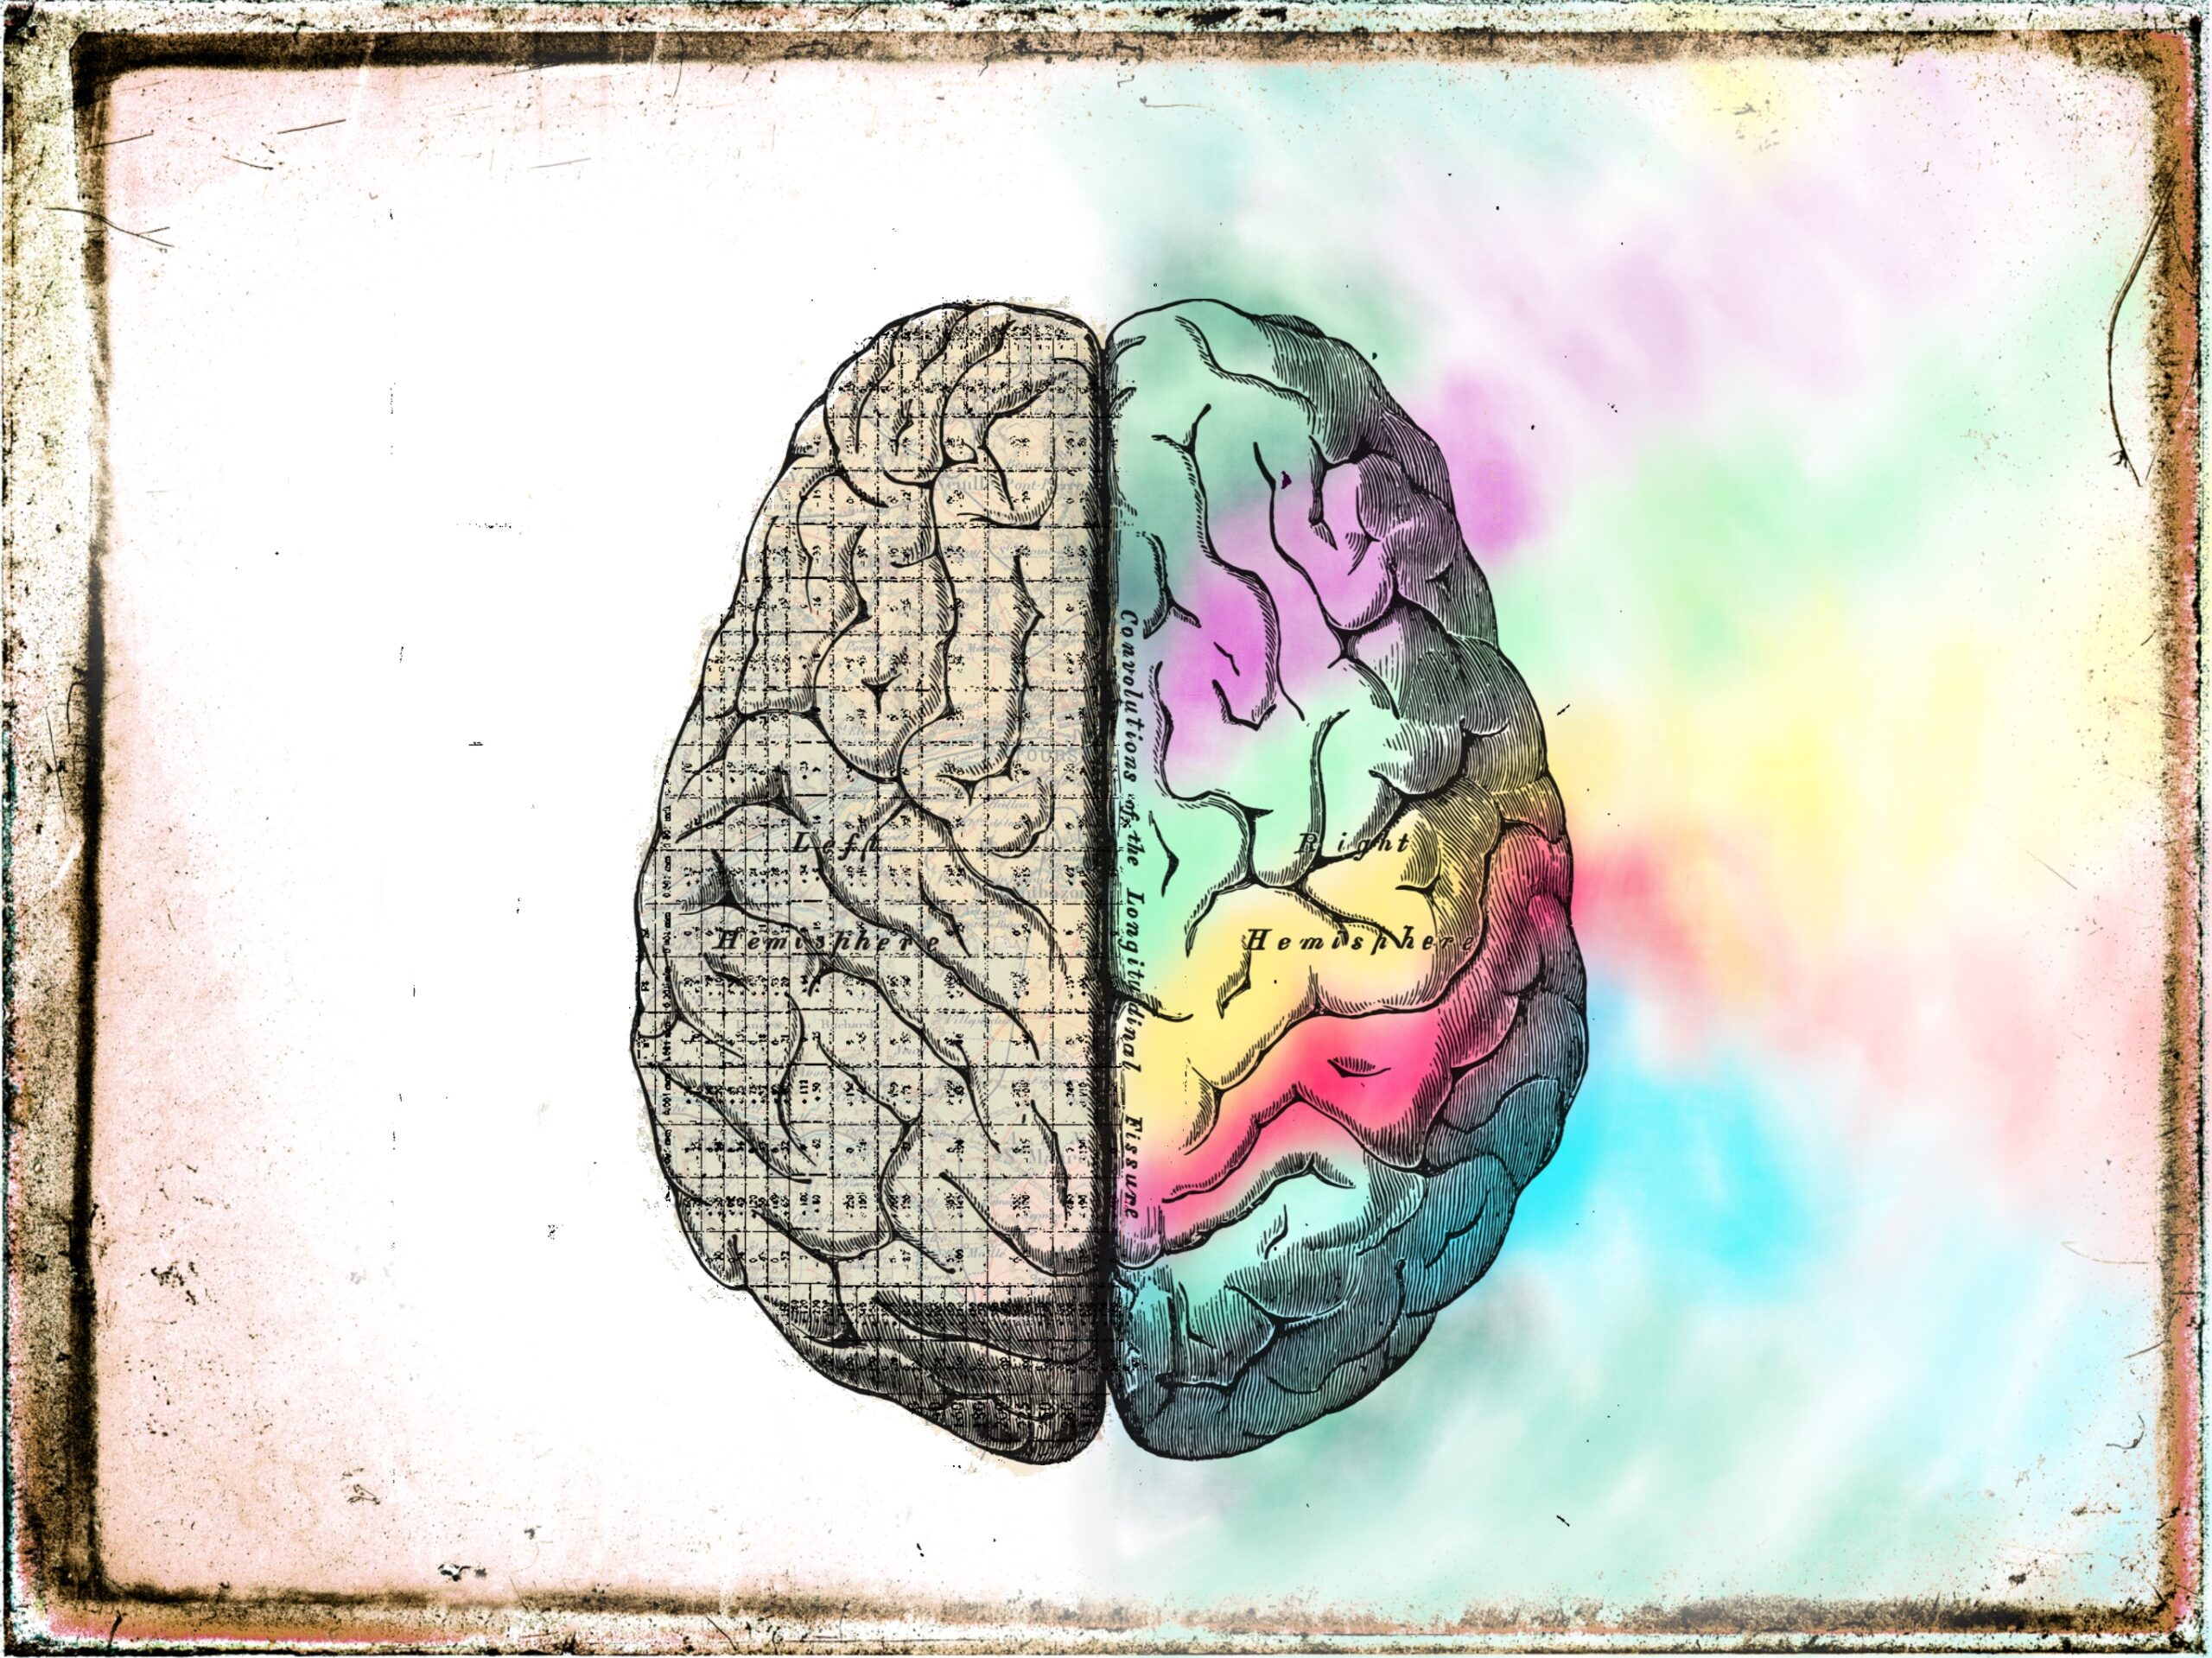 Eine Zeichnung eines Gehirns von oben gesehen. Die linke Hälfte ist gefüllt mit einem Raster und Zahlen/Zeichen. Die rechte Hälfte ist bunt. Das bunte breitet sich über die Fläche aus.